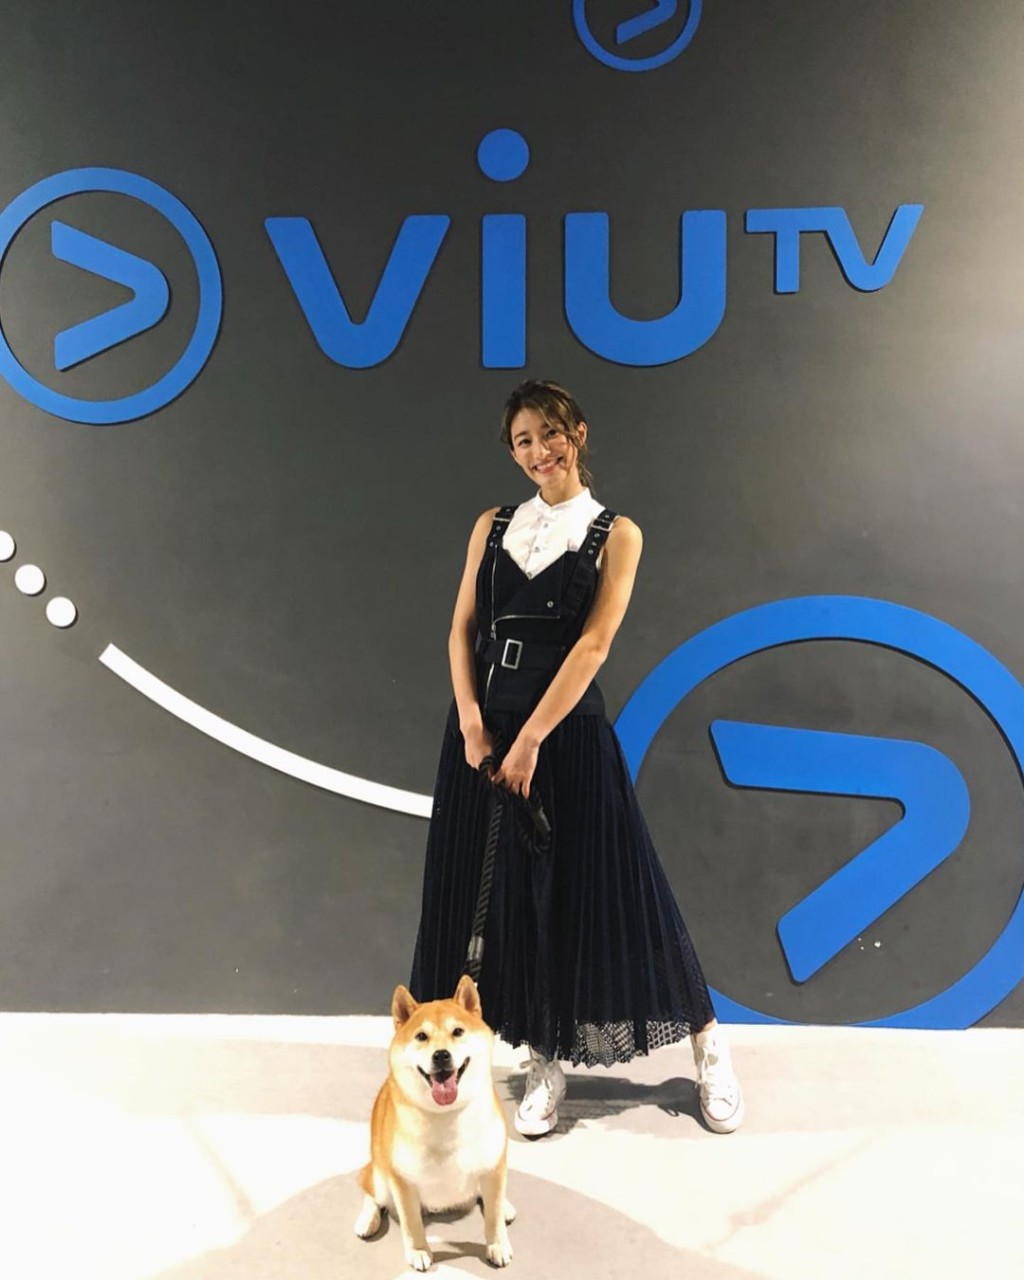 邢慧敏曾帶同愛犬作客ViuTV節目。